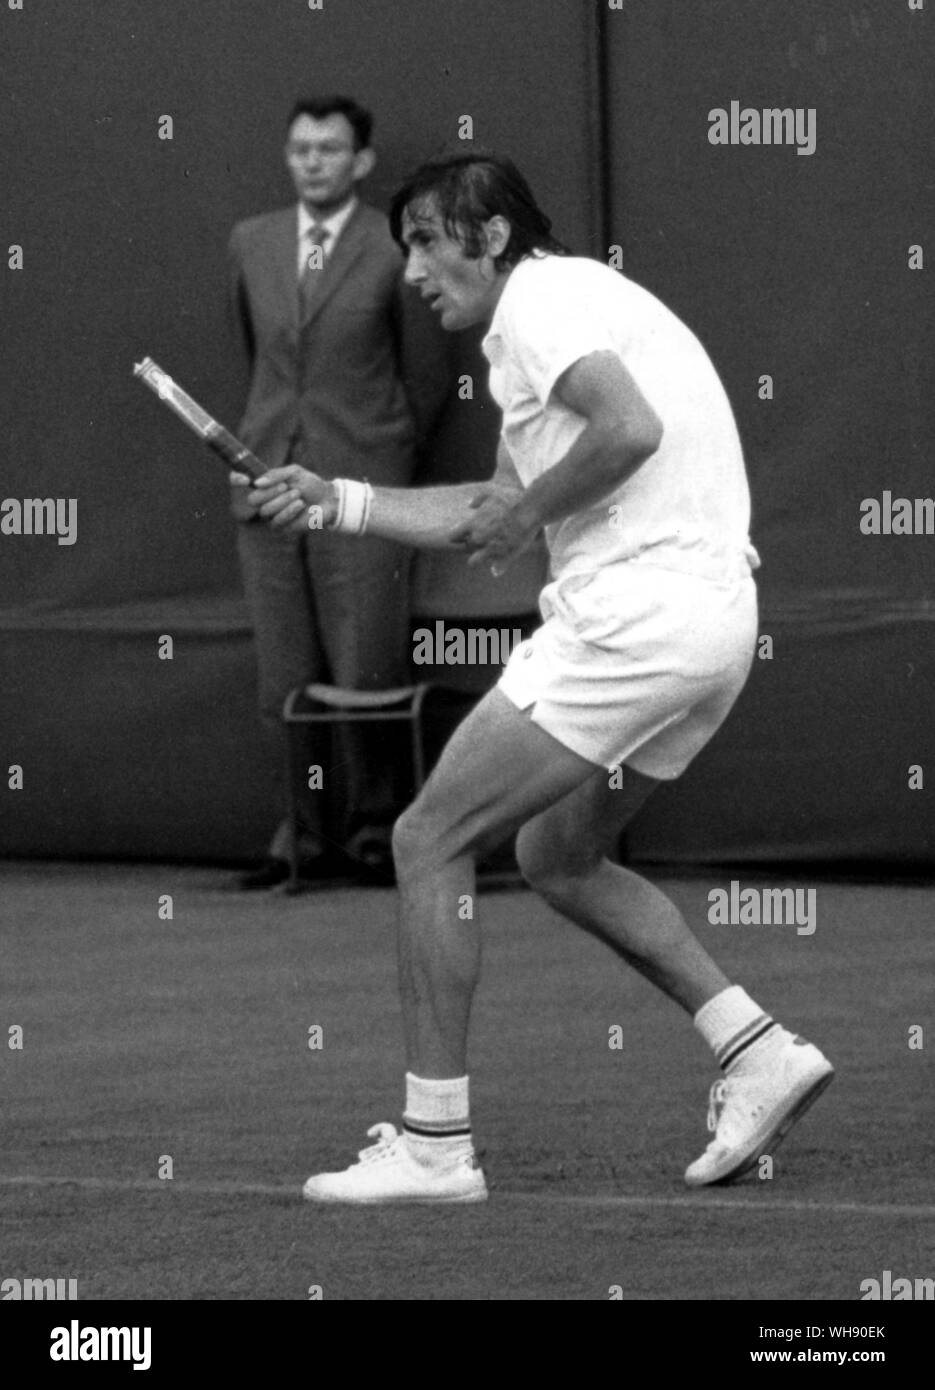 Un colpo fortunato - Ile Nastase su un esterno corte a Wimbledon 1971, stava giocando diretti dalla linea di base e la testa della racchetta si è rotto su impatto e sono volato in net. Nastase, ancora finendo la corsa, detiene solo lo stelo. Foto Stock